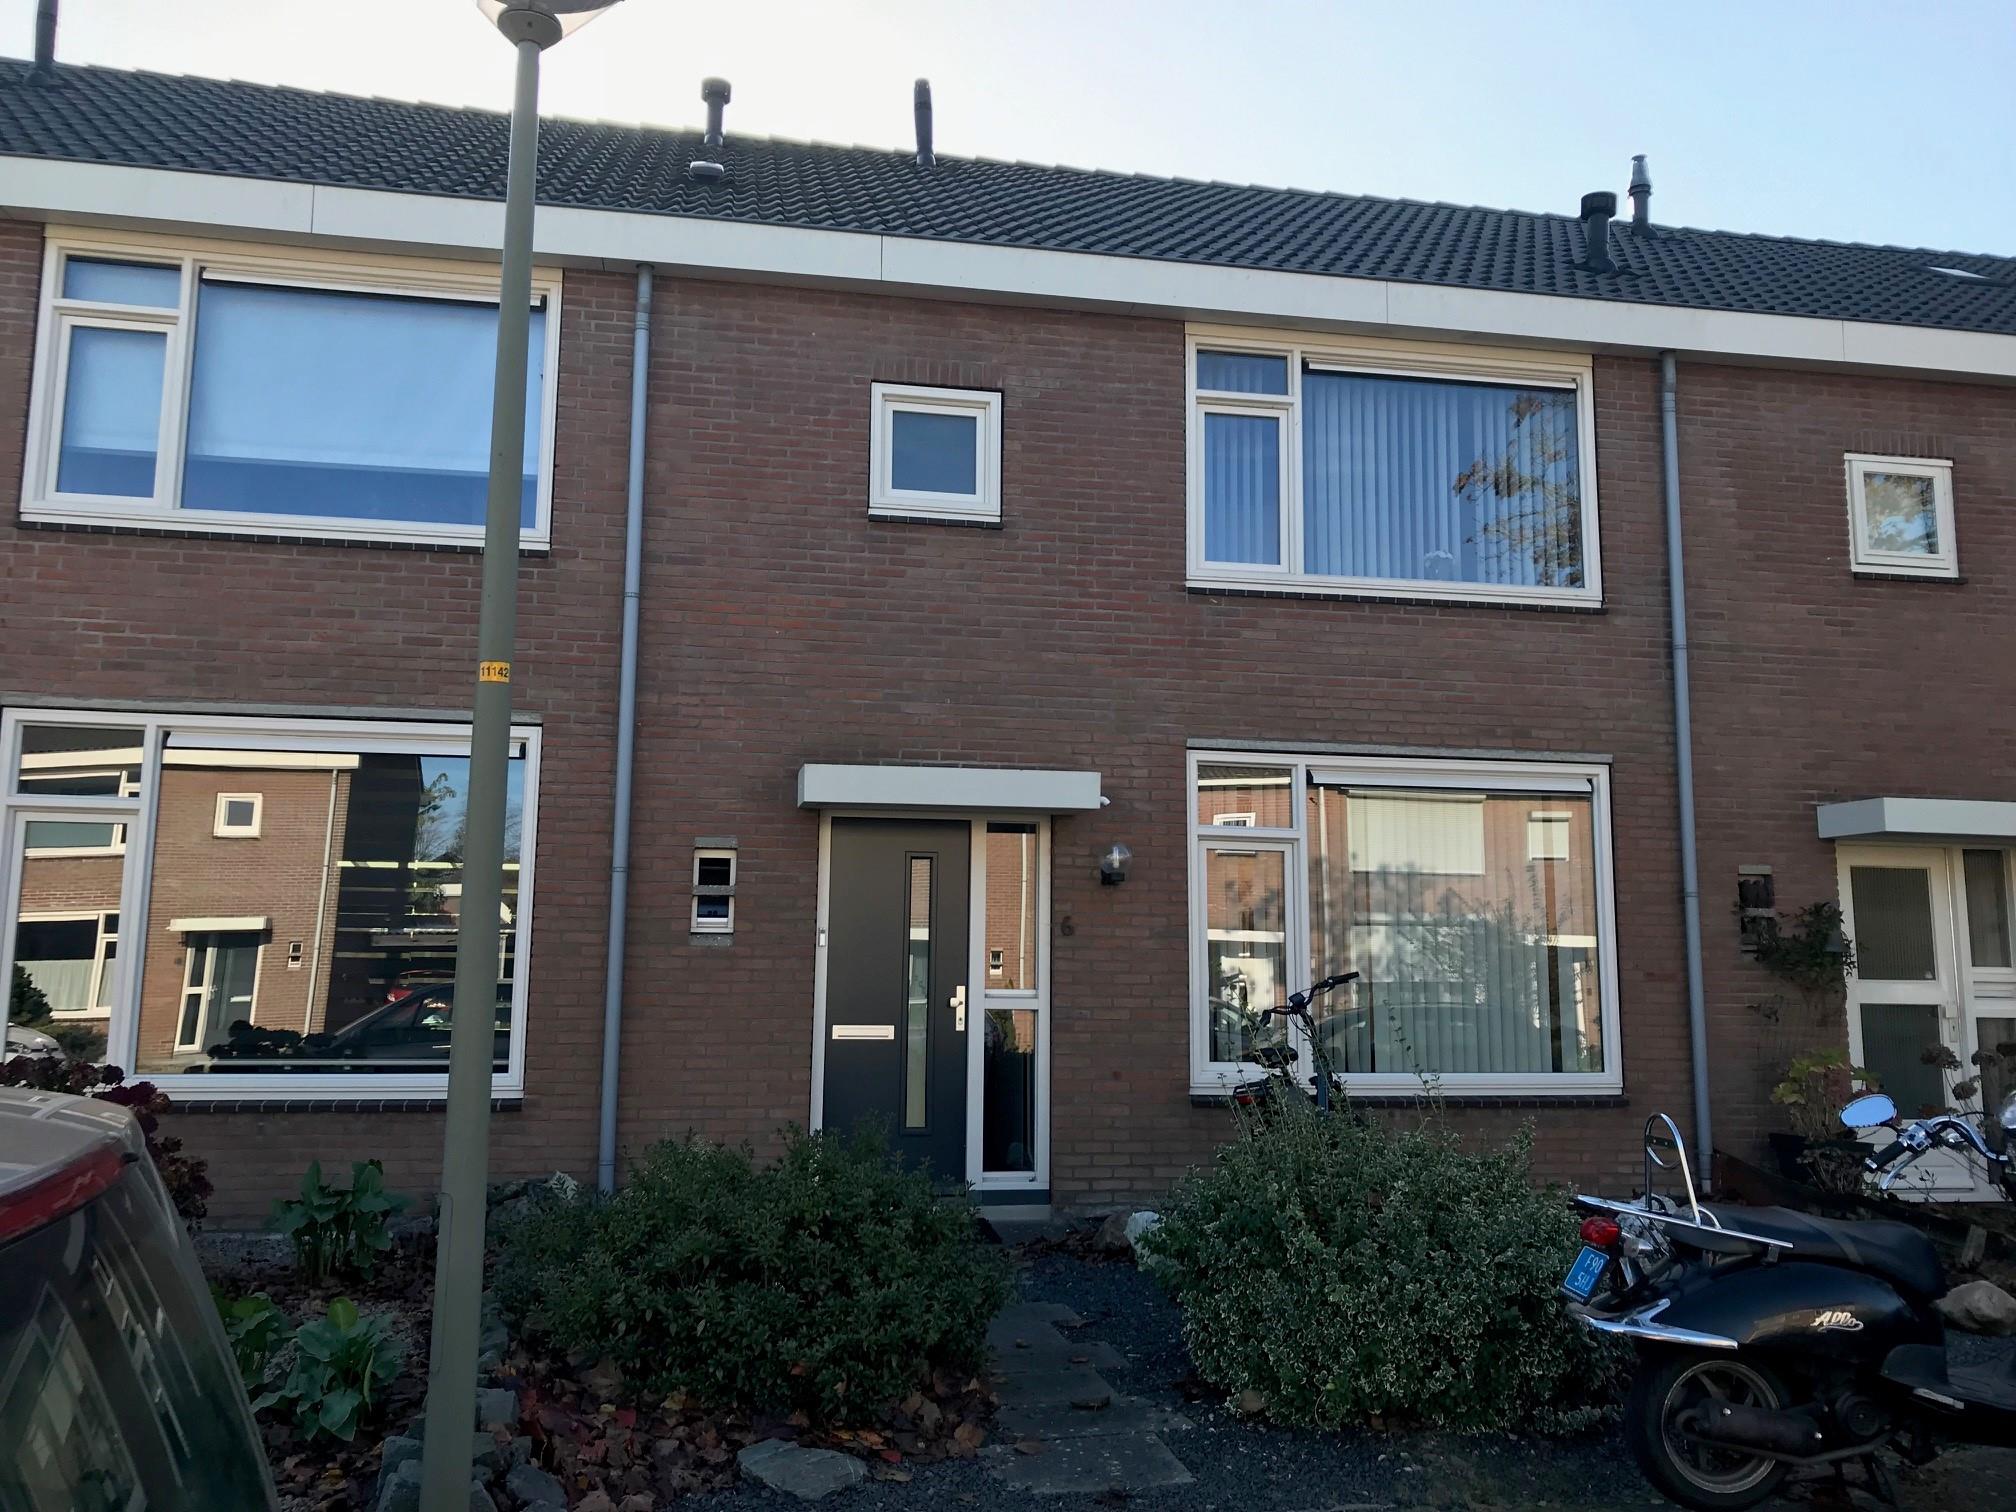 Kardinaal Gerardstraat 6, 6561 BW Groesbeek, Nederland